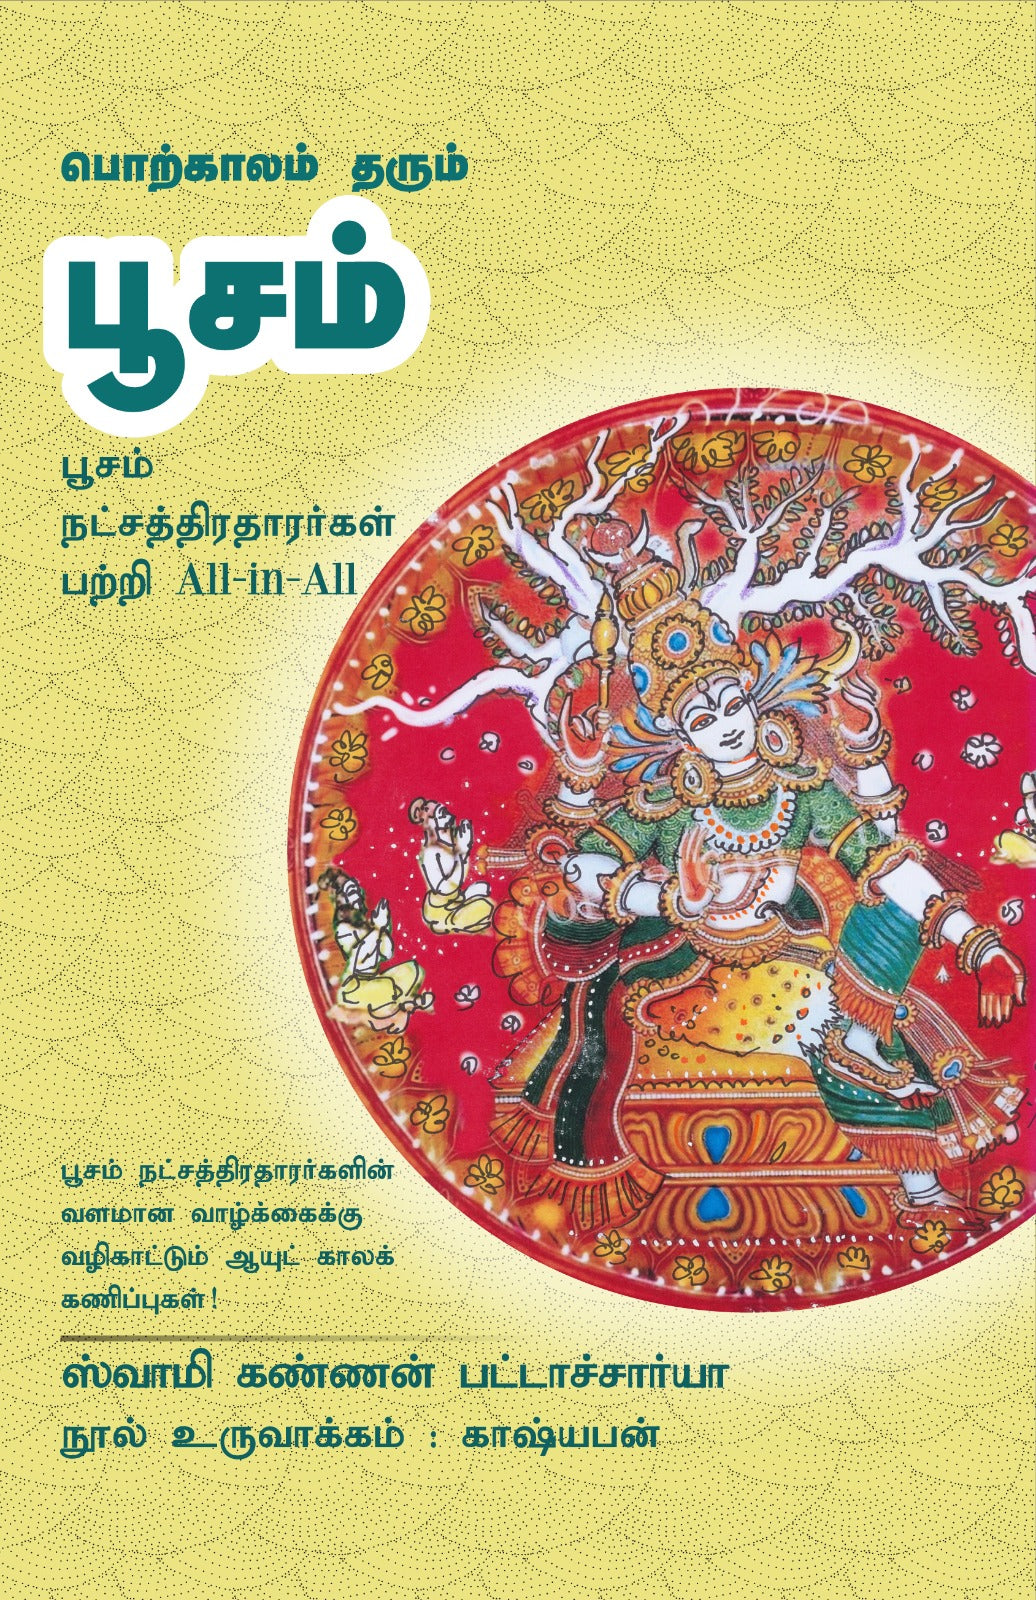 பூசம்- Porkaalam Tharum Poosam All-in-All About Poosam Nakshatra- Tamil